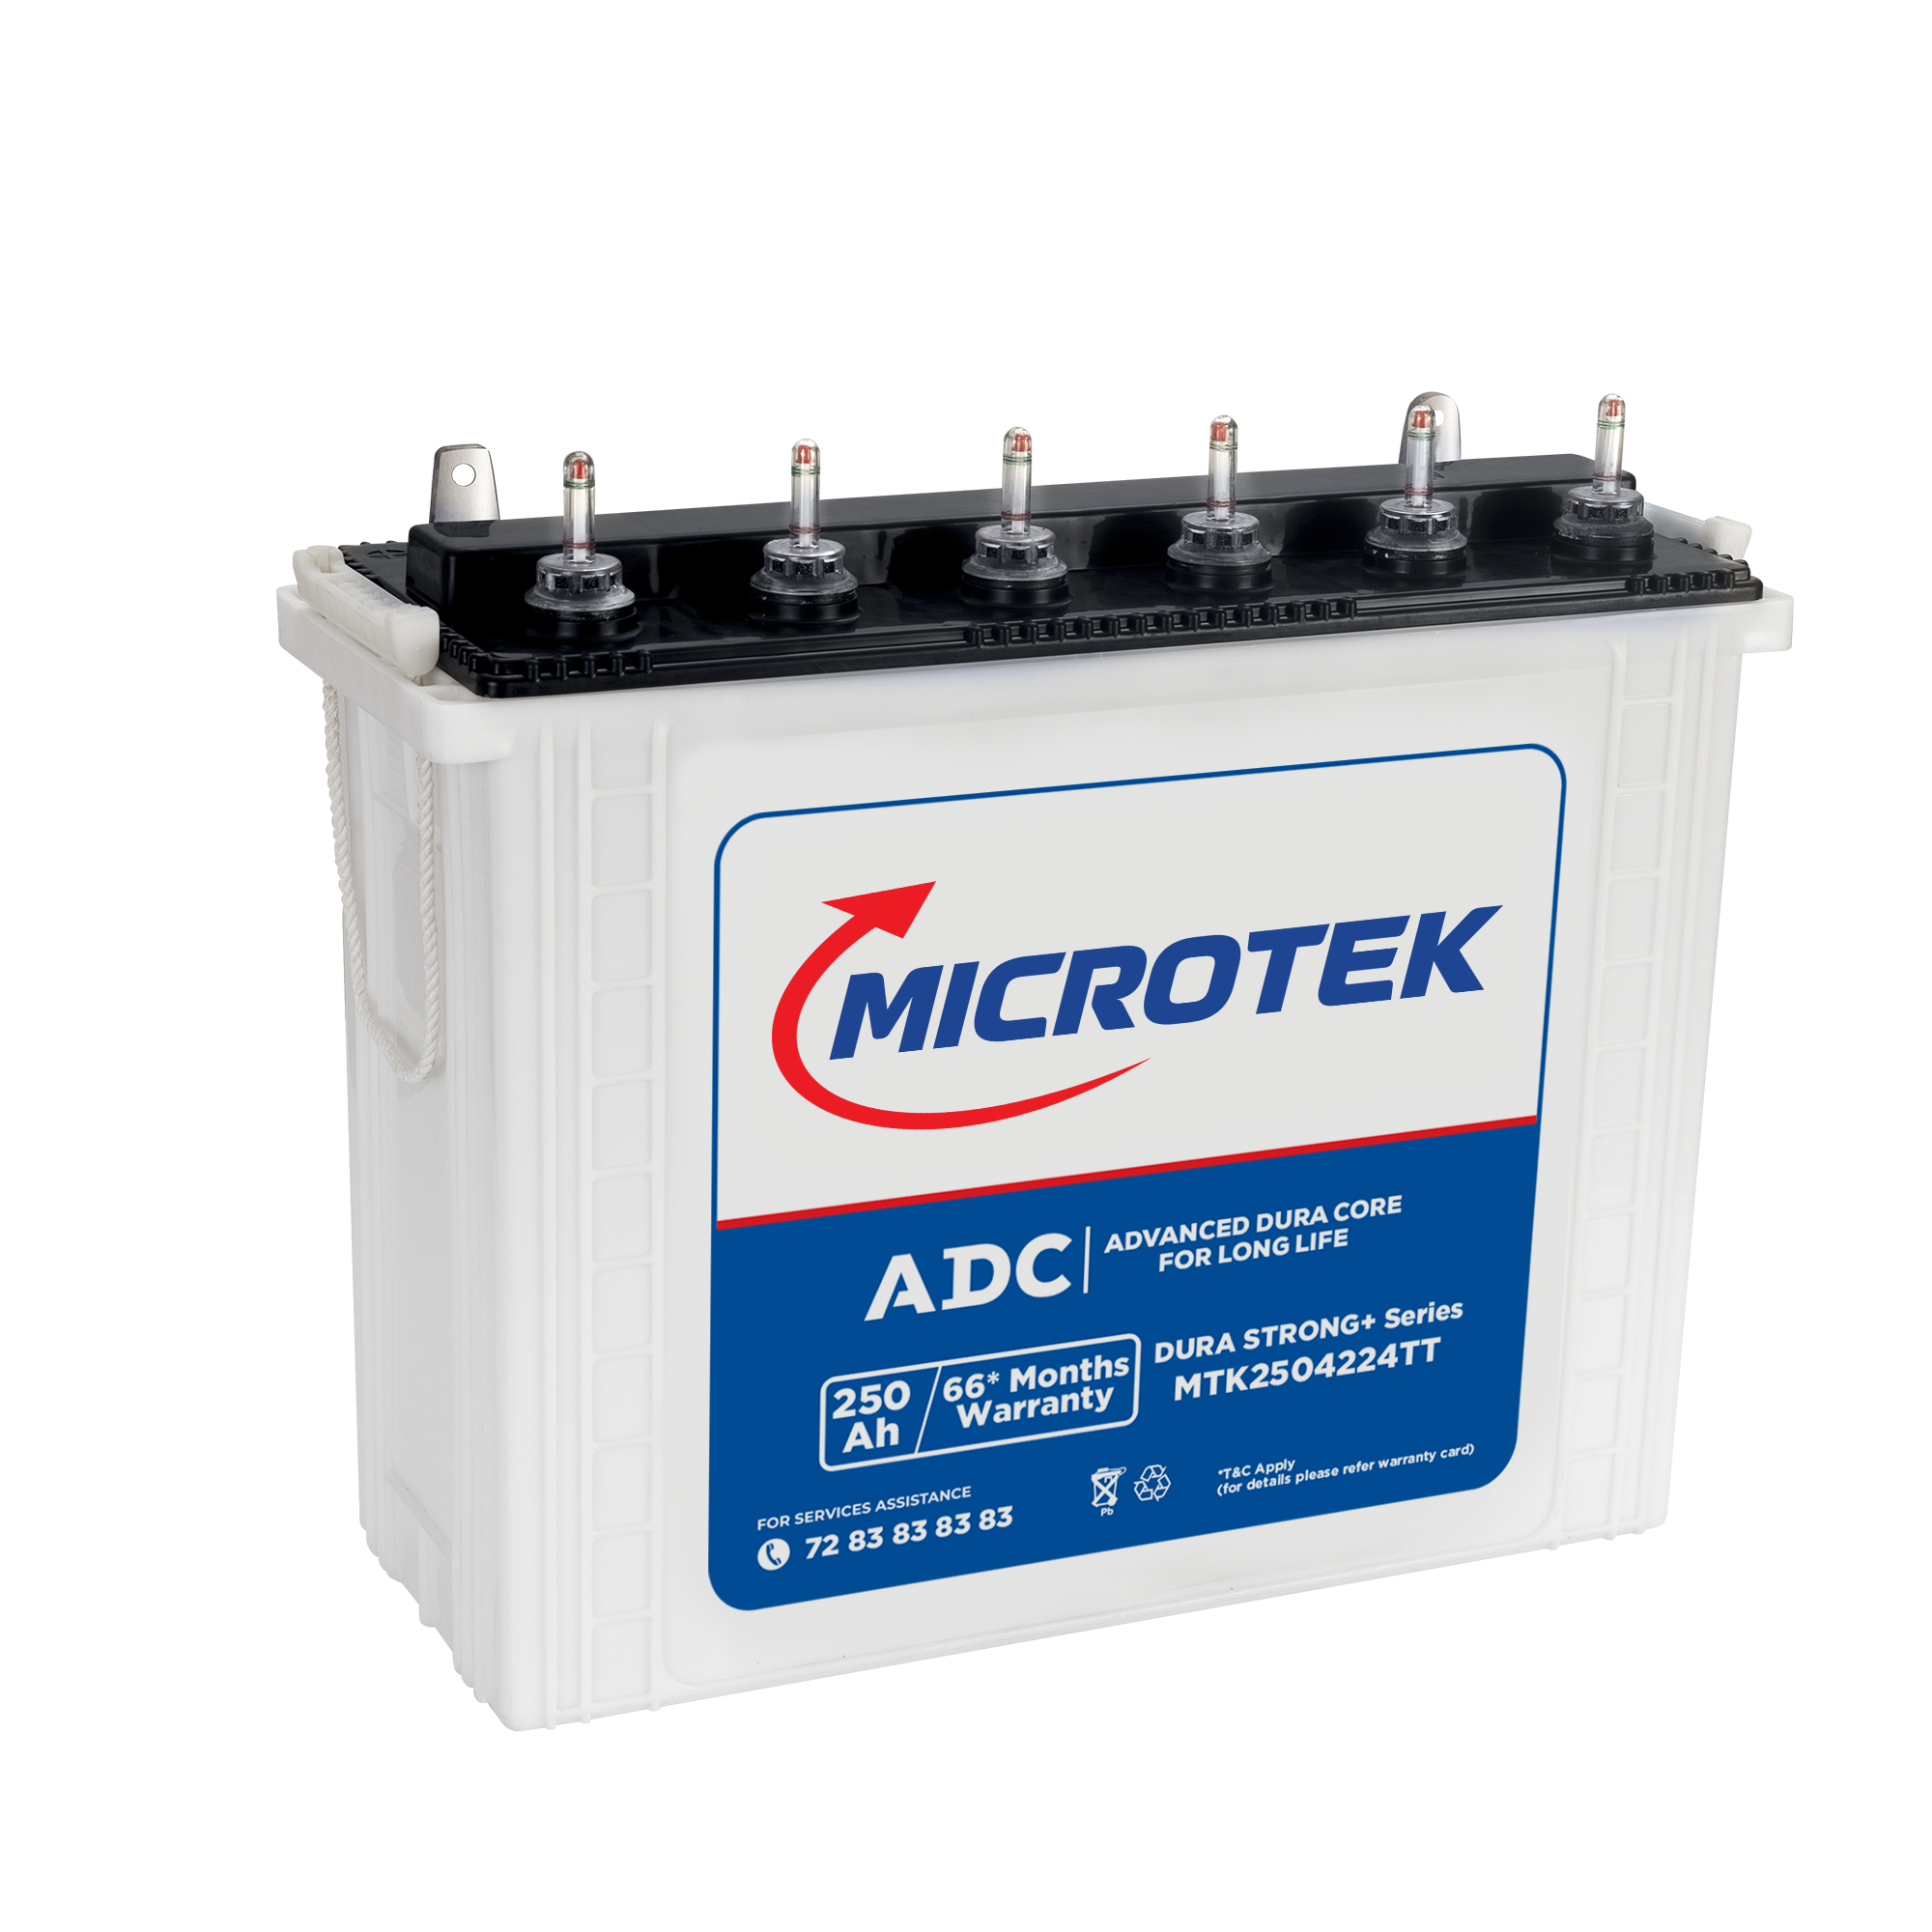 Microtek Dura STRONG+ MTK2504224TT 250Ah/12V